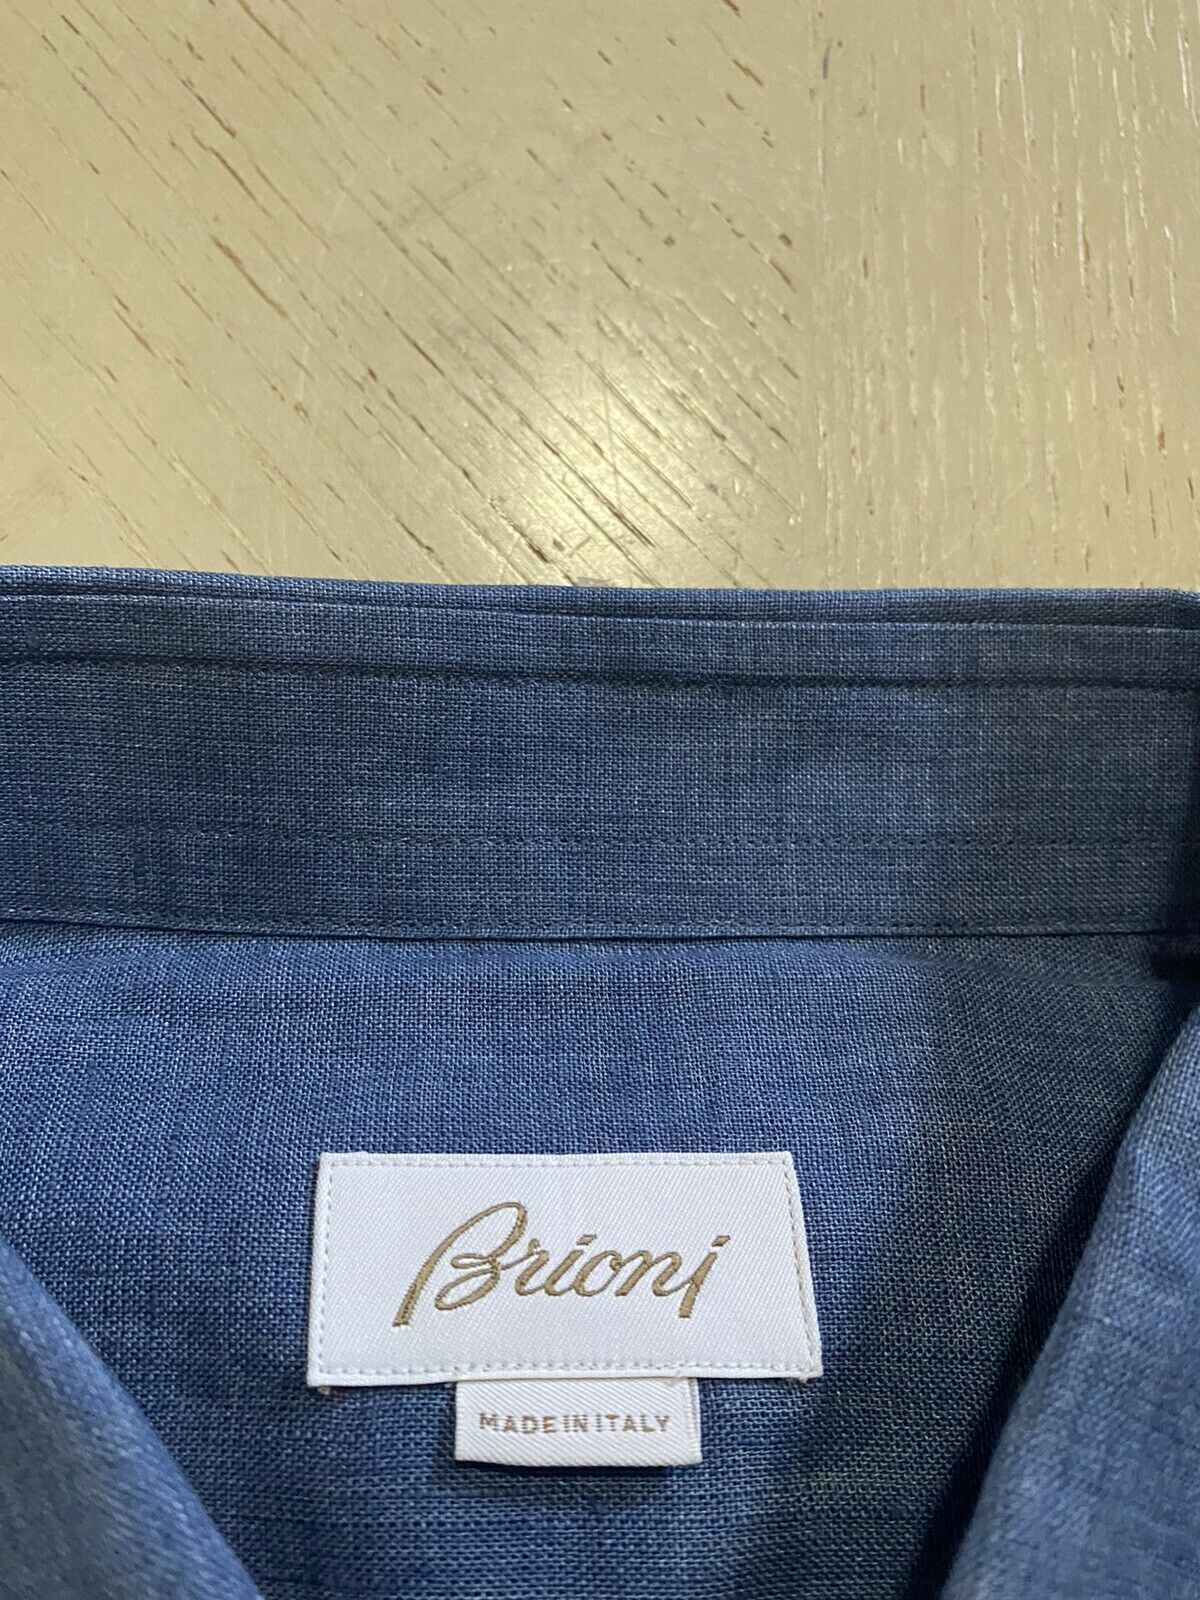 NWT $500 Мужская льняная классическая рубашка Brioni с цветными рукавами, синяя, размер L, Италия